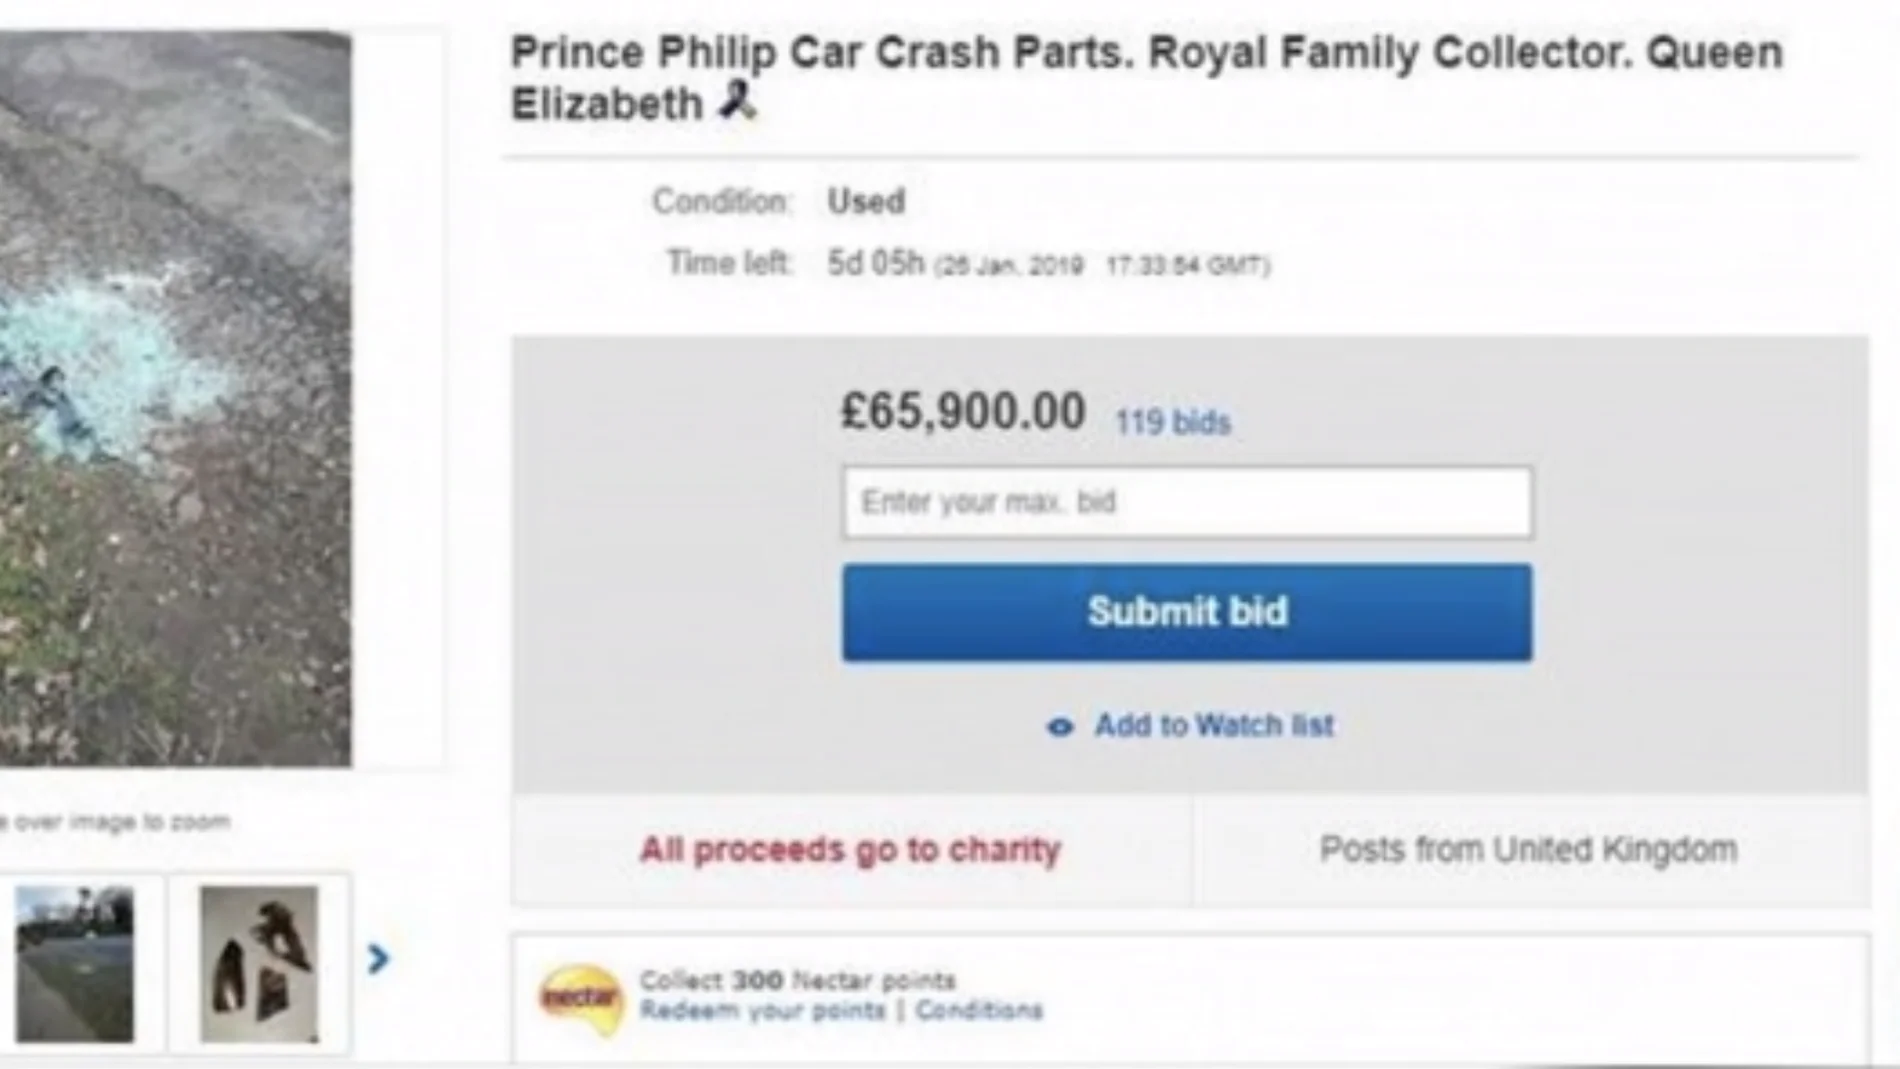 Subastan los restos del coche accidentado del duque de Edimburgo para recaudar fondos para la lucha contra el cáncer